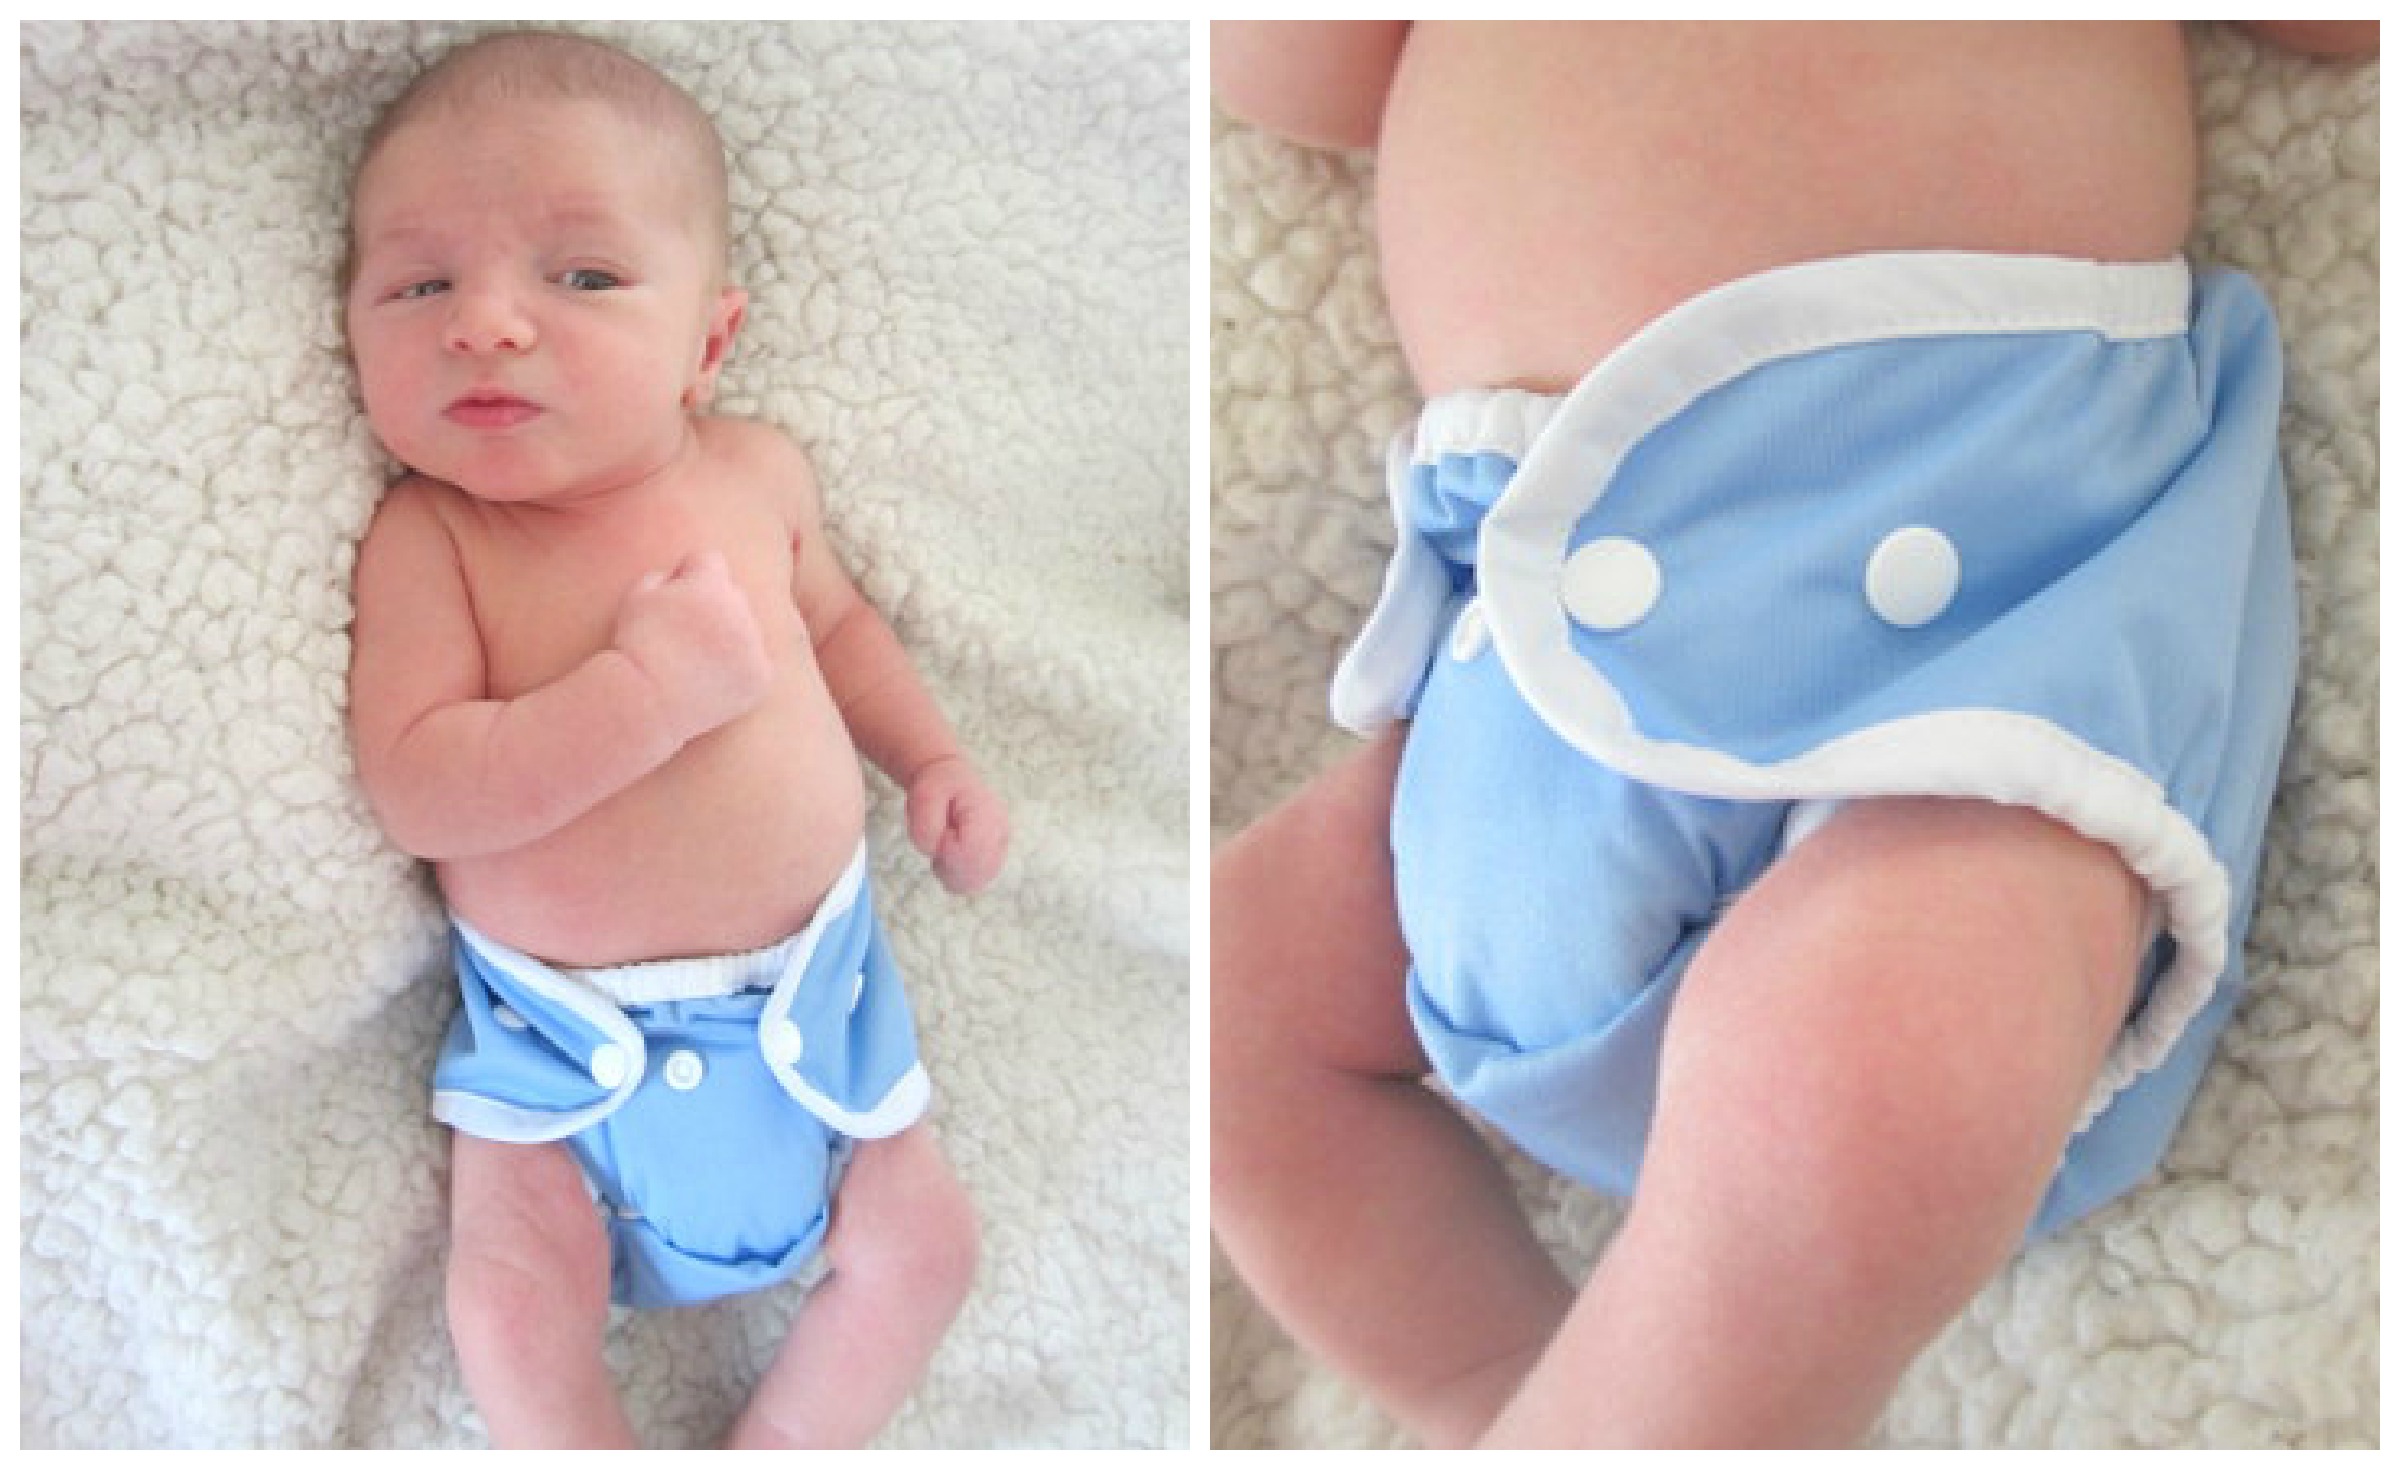 newborn cover cloth diaper